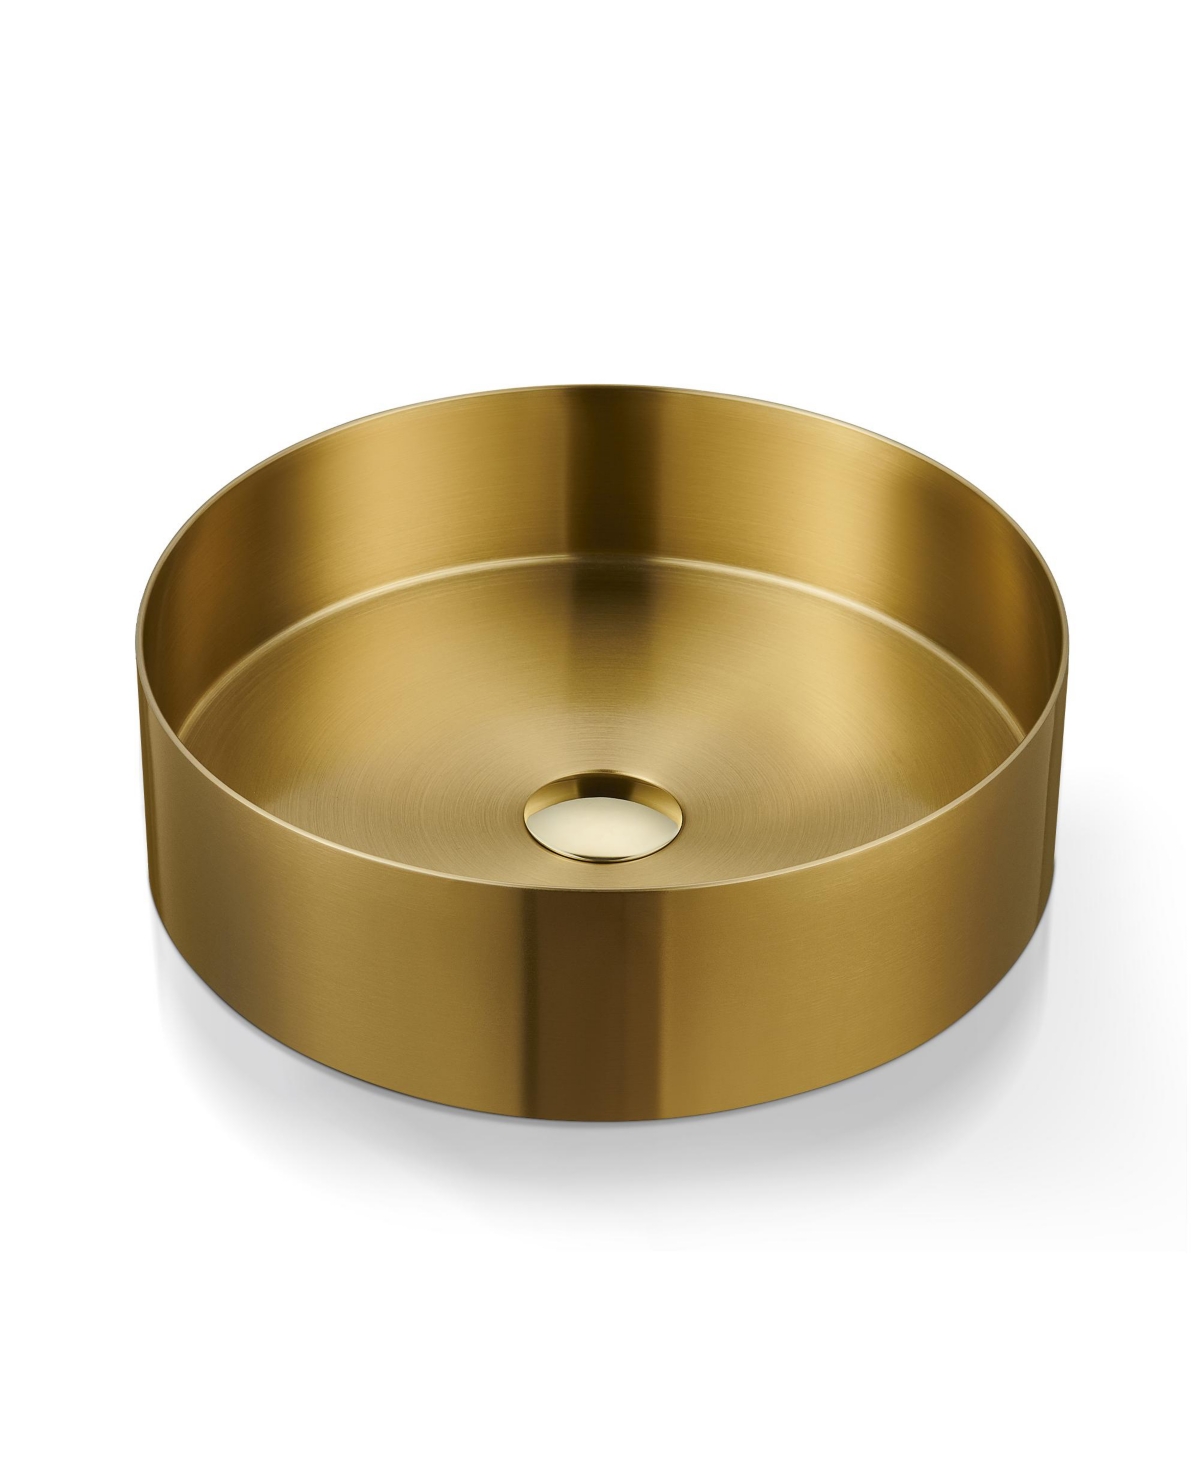 14.9'' Stainless Steel Circular Vessel Bathroom Sink - Gold